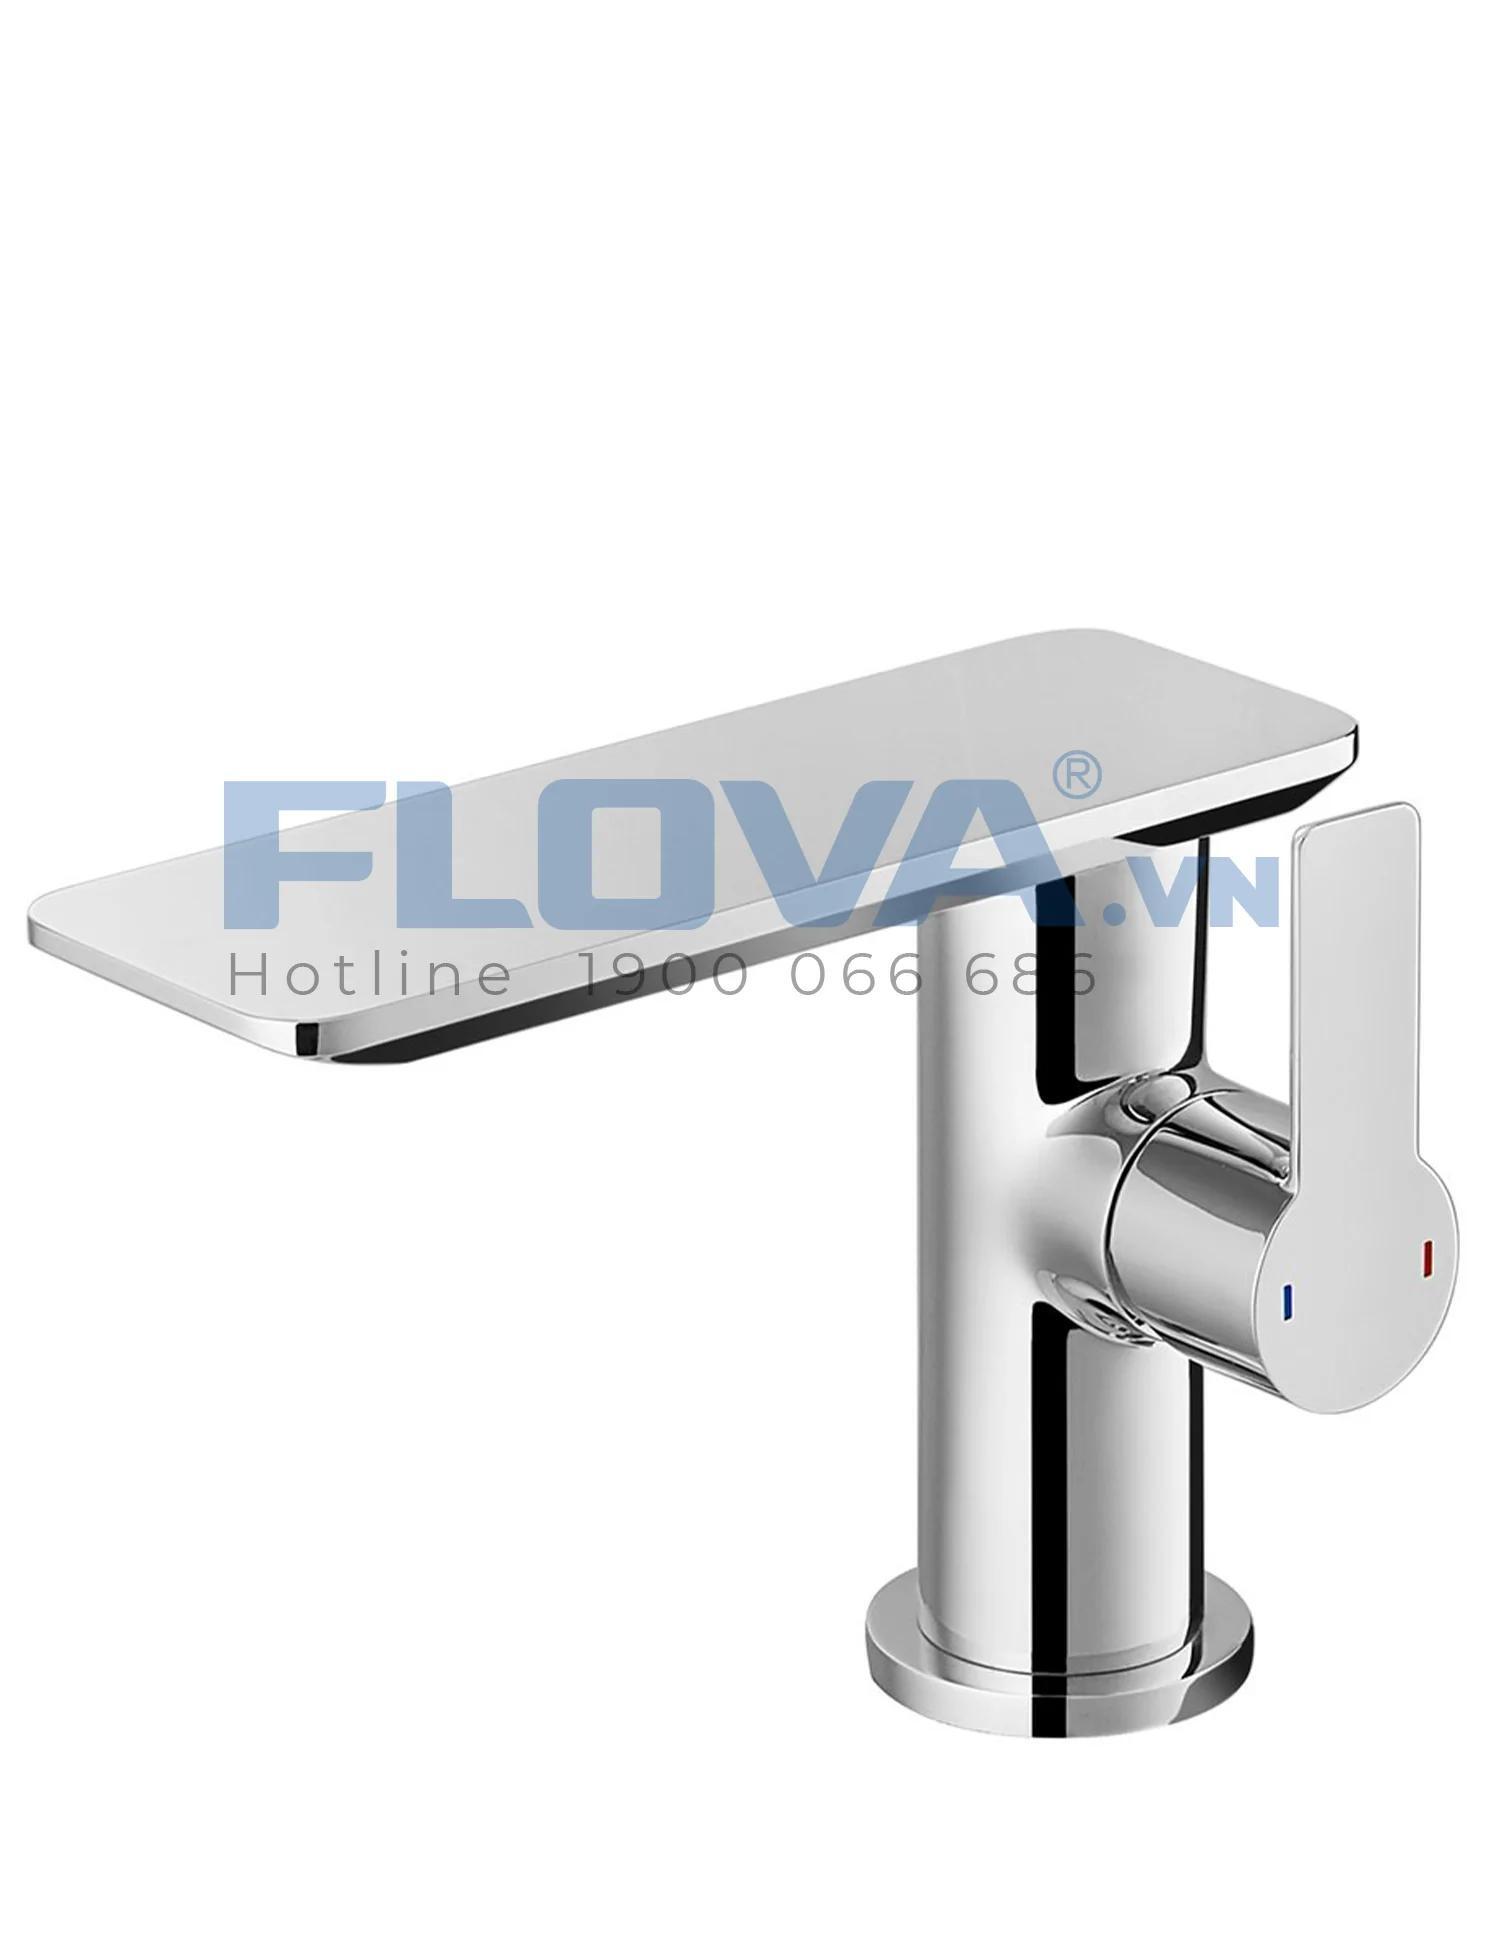 Vòi chậu nóng lạnh lavabo Flova FH 8205-D108